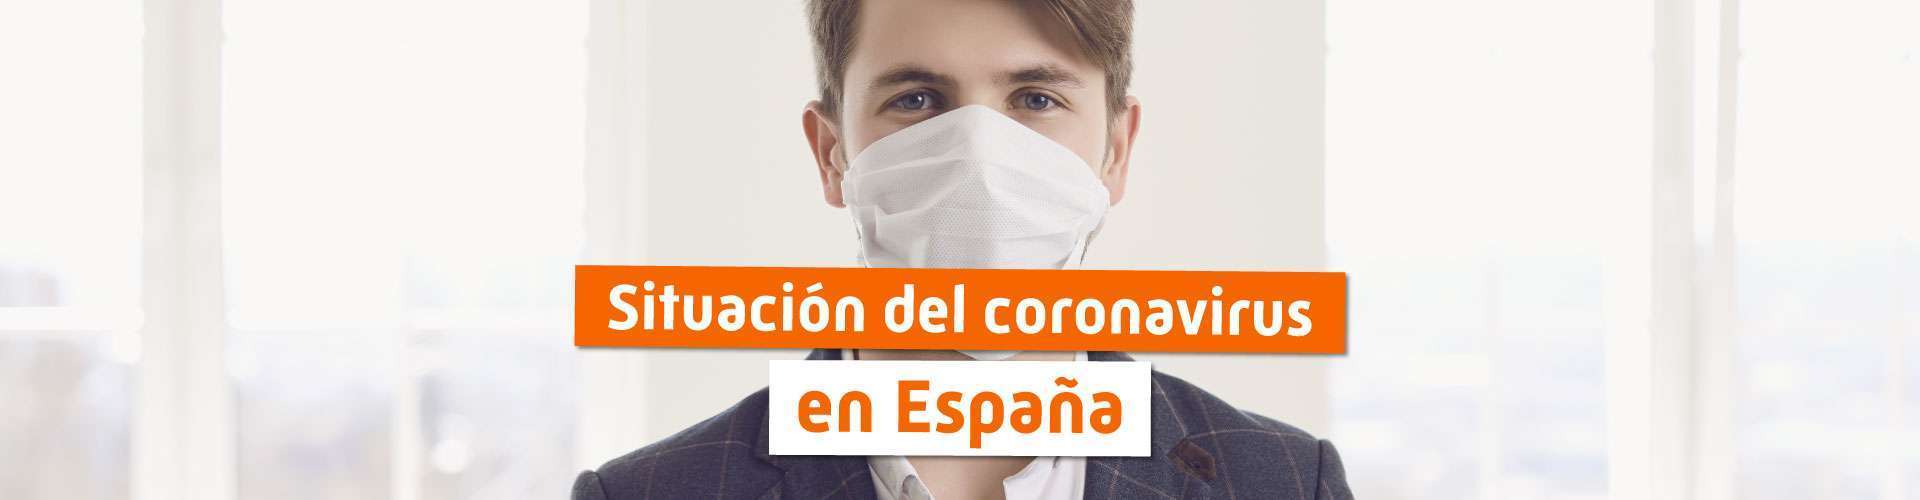 Cómo afecta Coronavirus a trabajadores